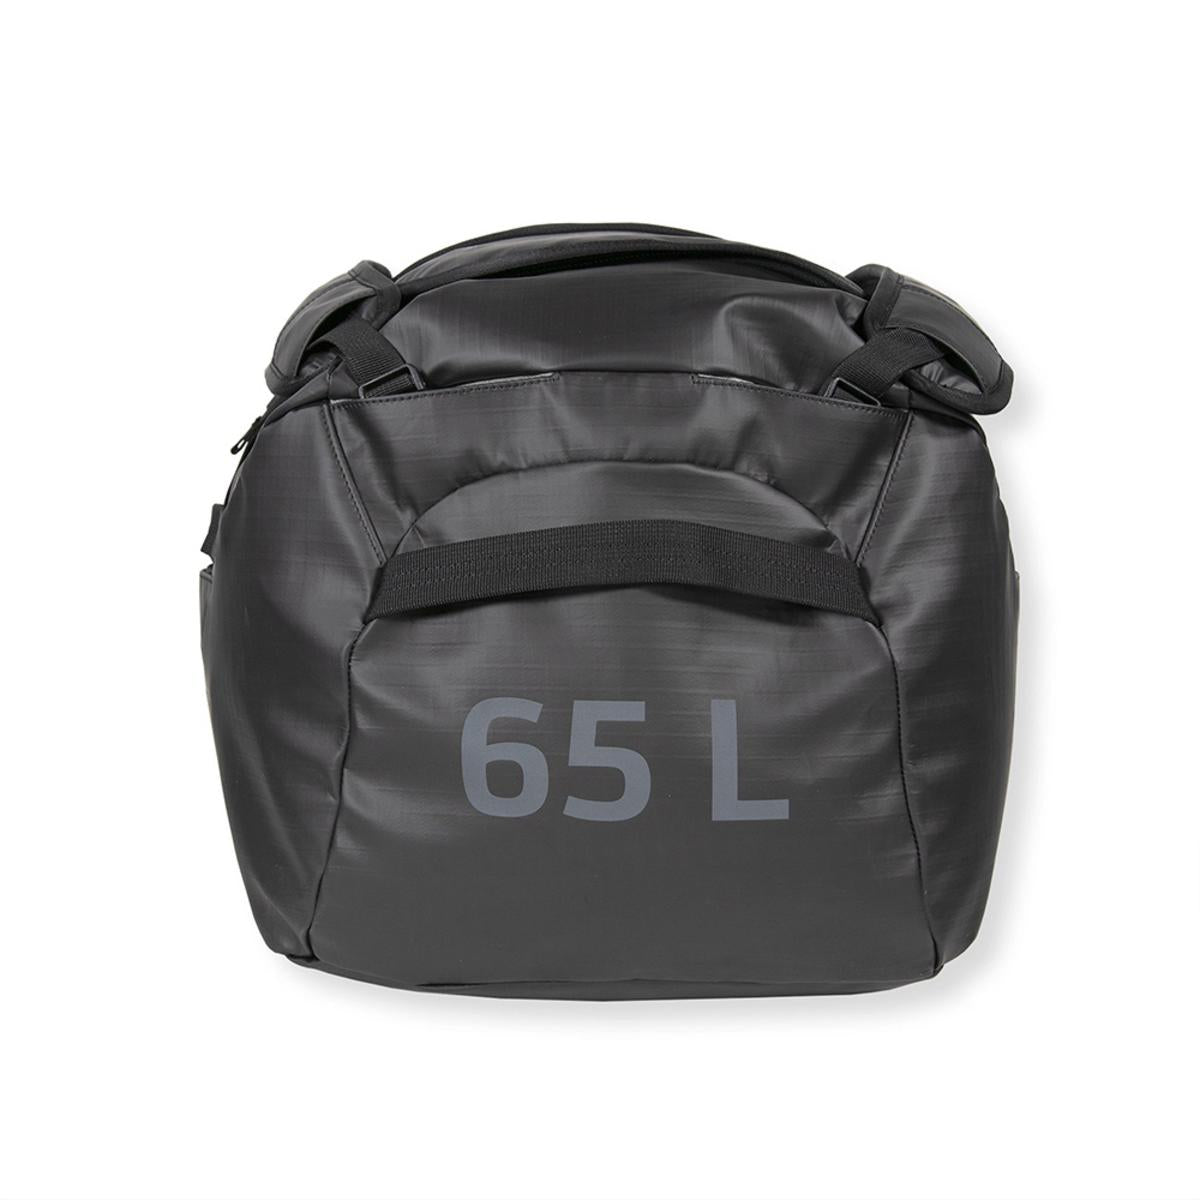 Klymit Gear Duffel 65L Bag - Black